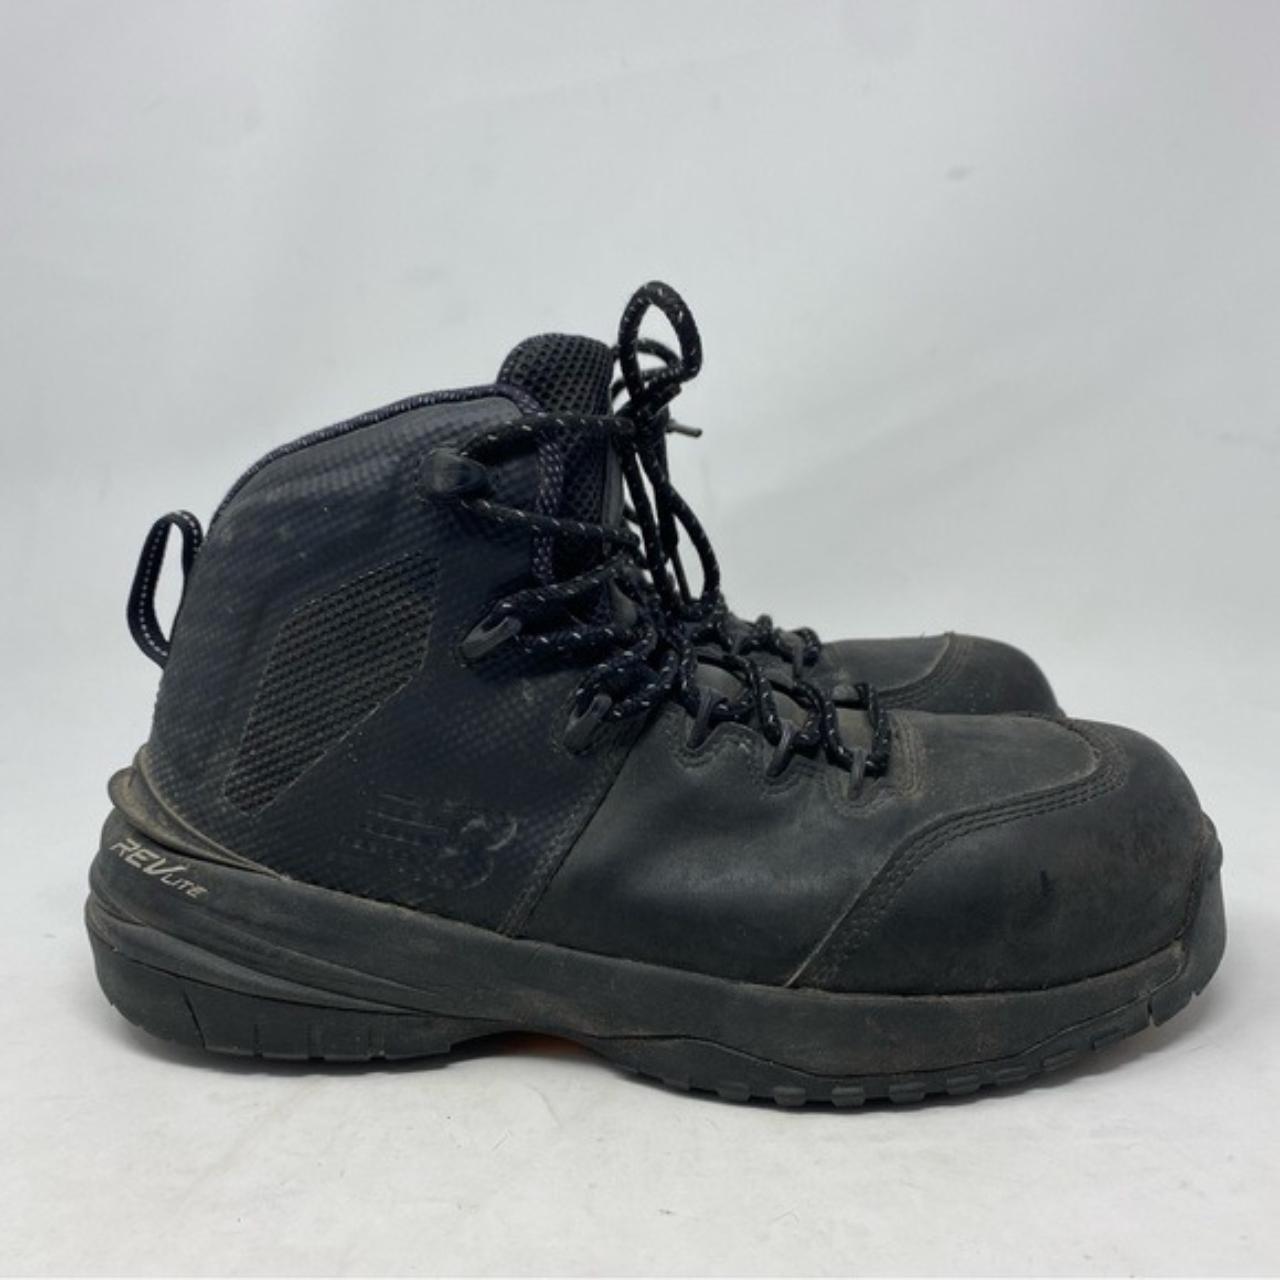 New Balance Men’s 989v1 Composite Toe Black Boots... - Depop